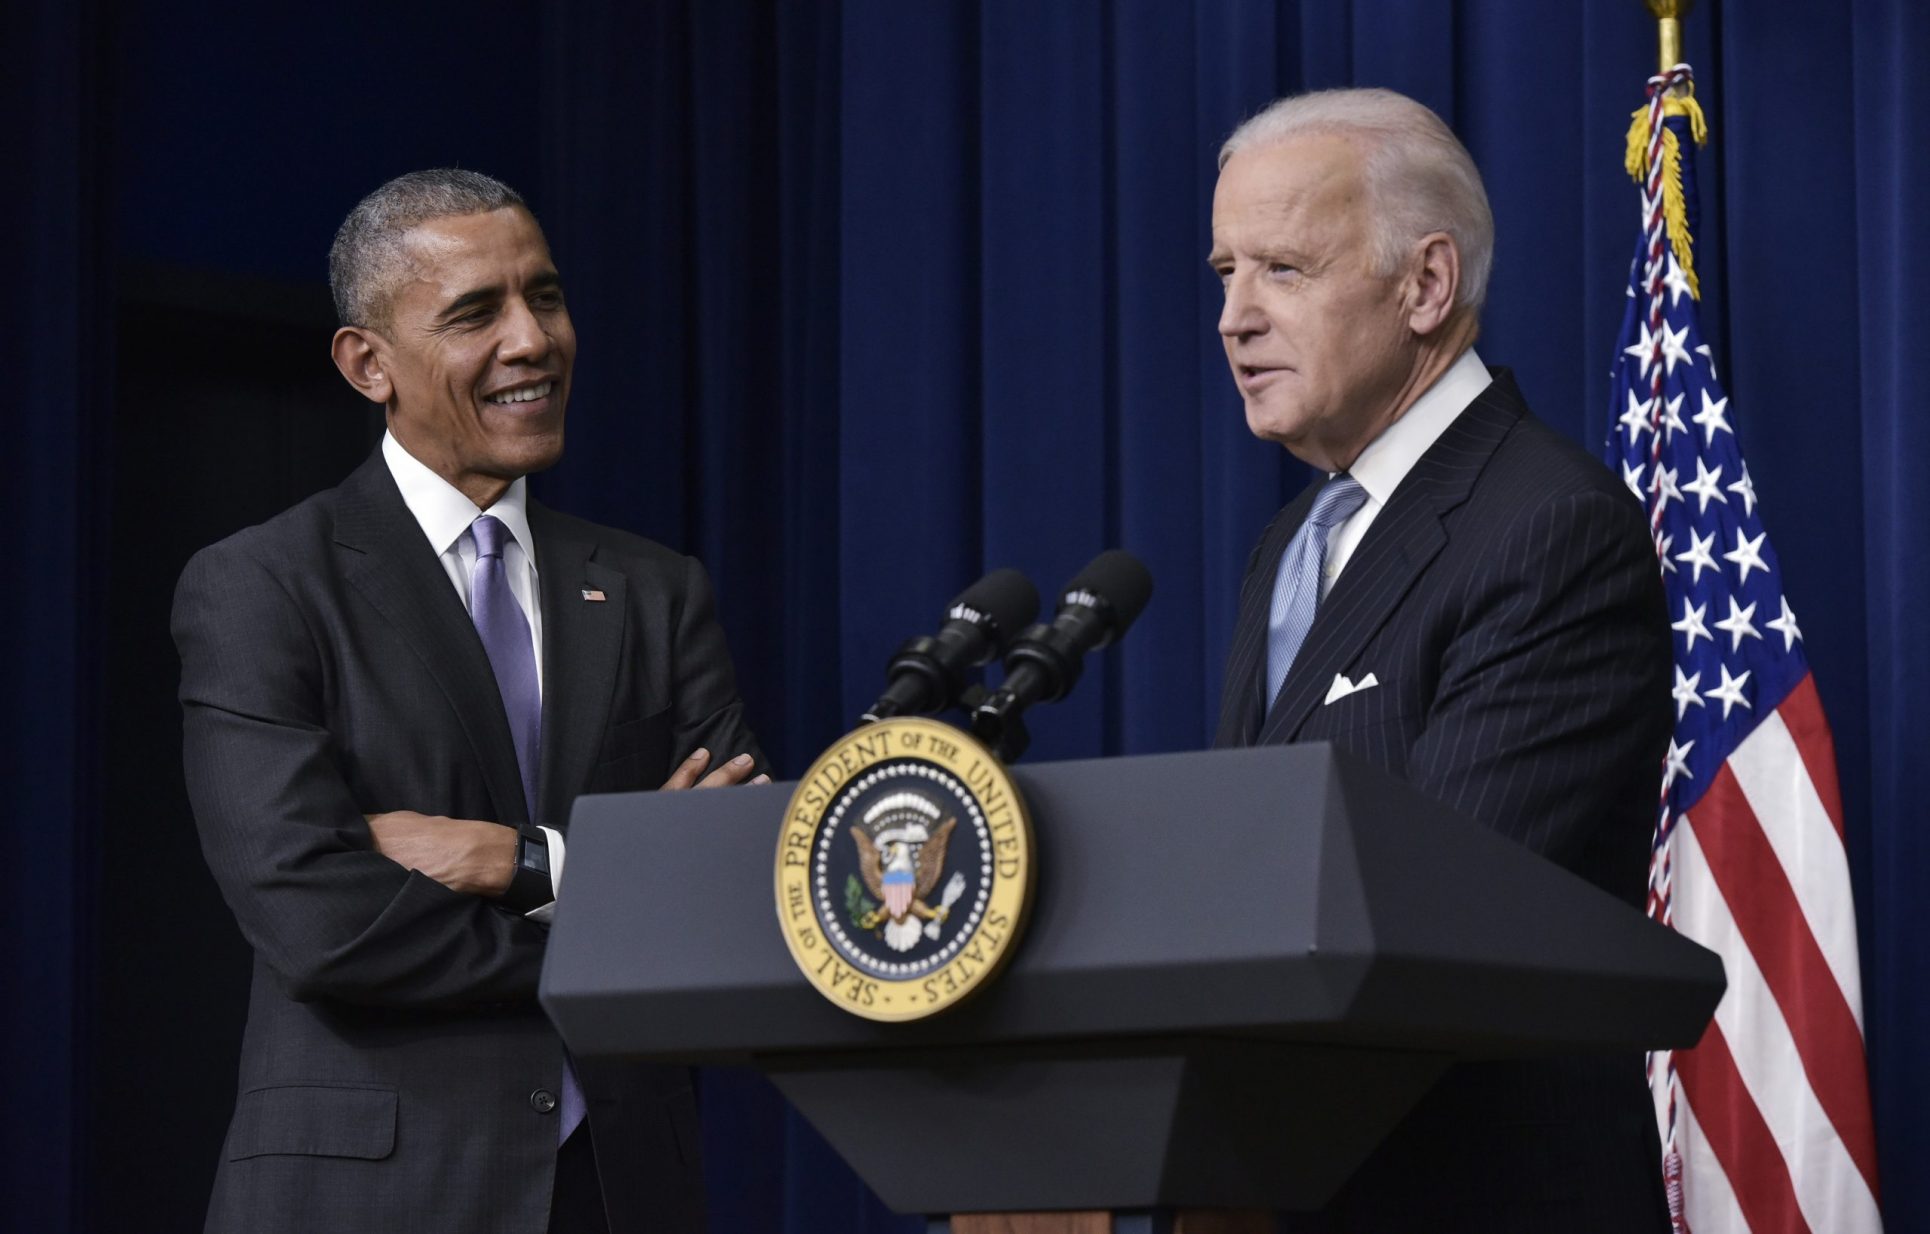 Obama da su apoyo a Biden, capaz de guiar a EE. UU. en los “tiempos más oscuros”